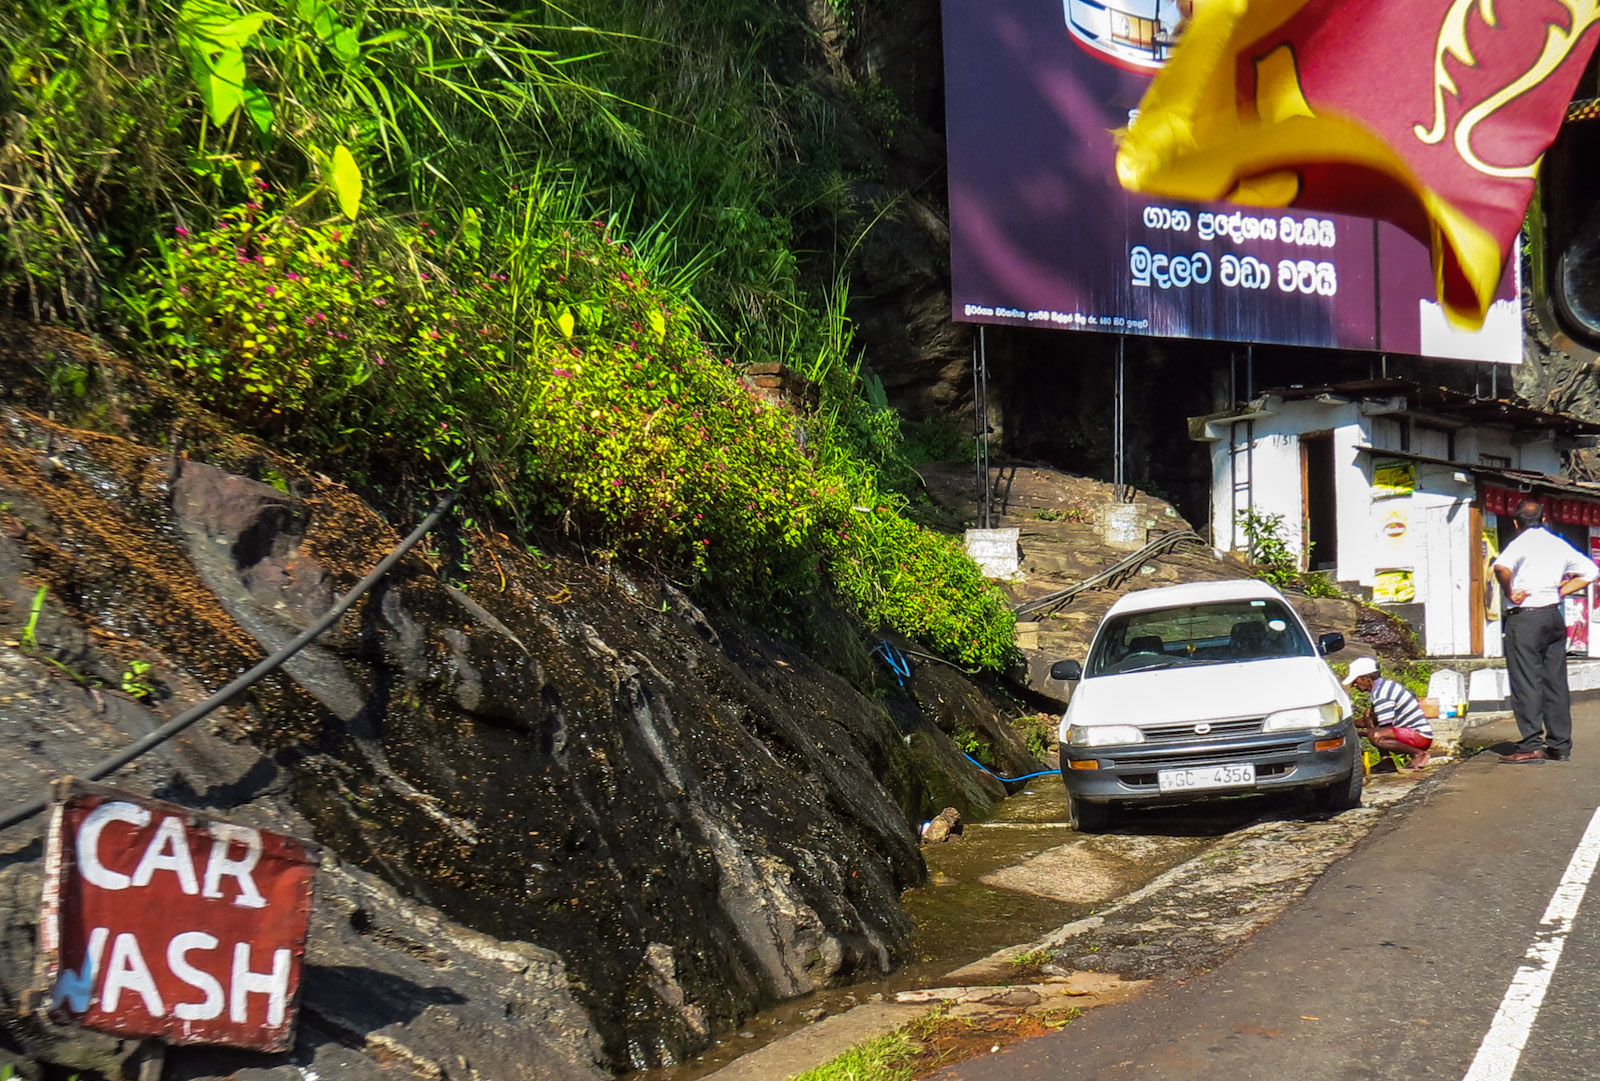 kandy-mountain-car-wash